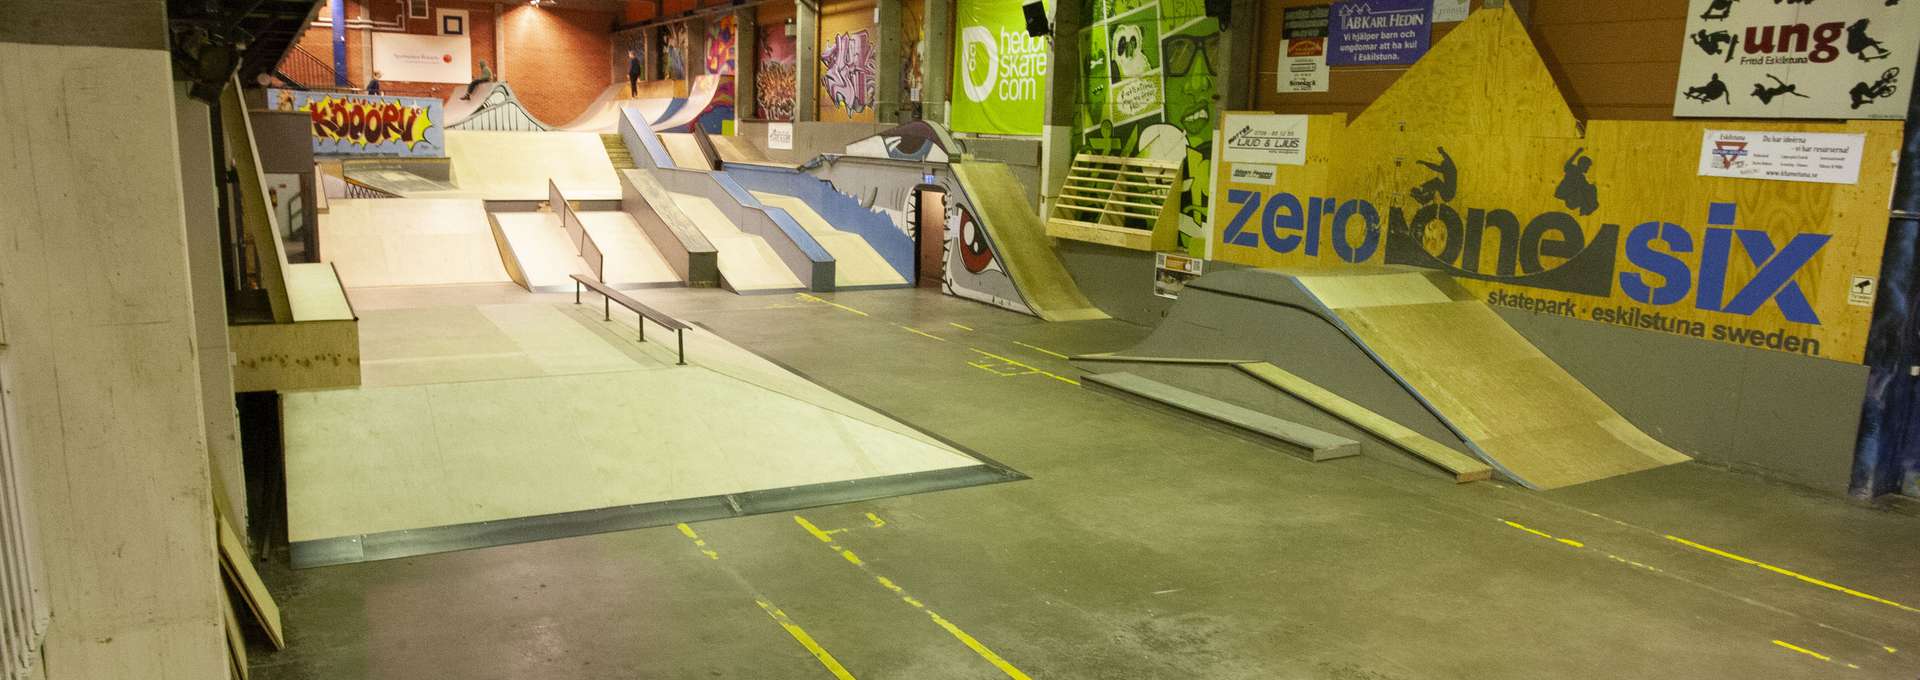 Bild i den folktomma skateparken Zero One Six där man ser ramper  och streetyta.